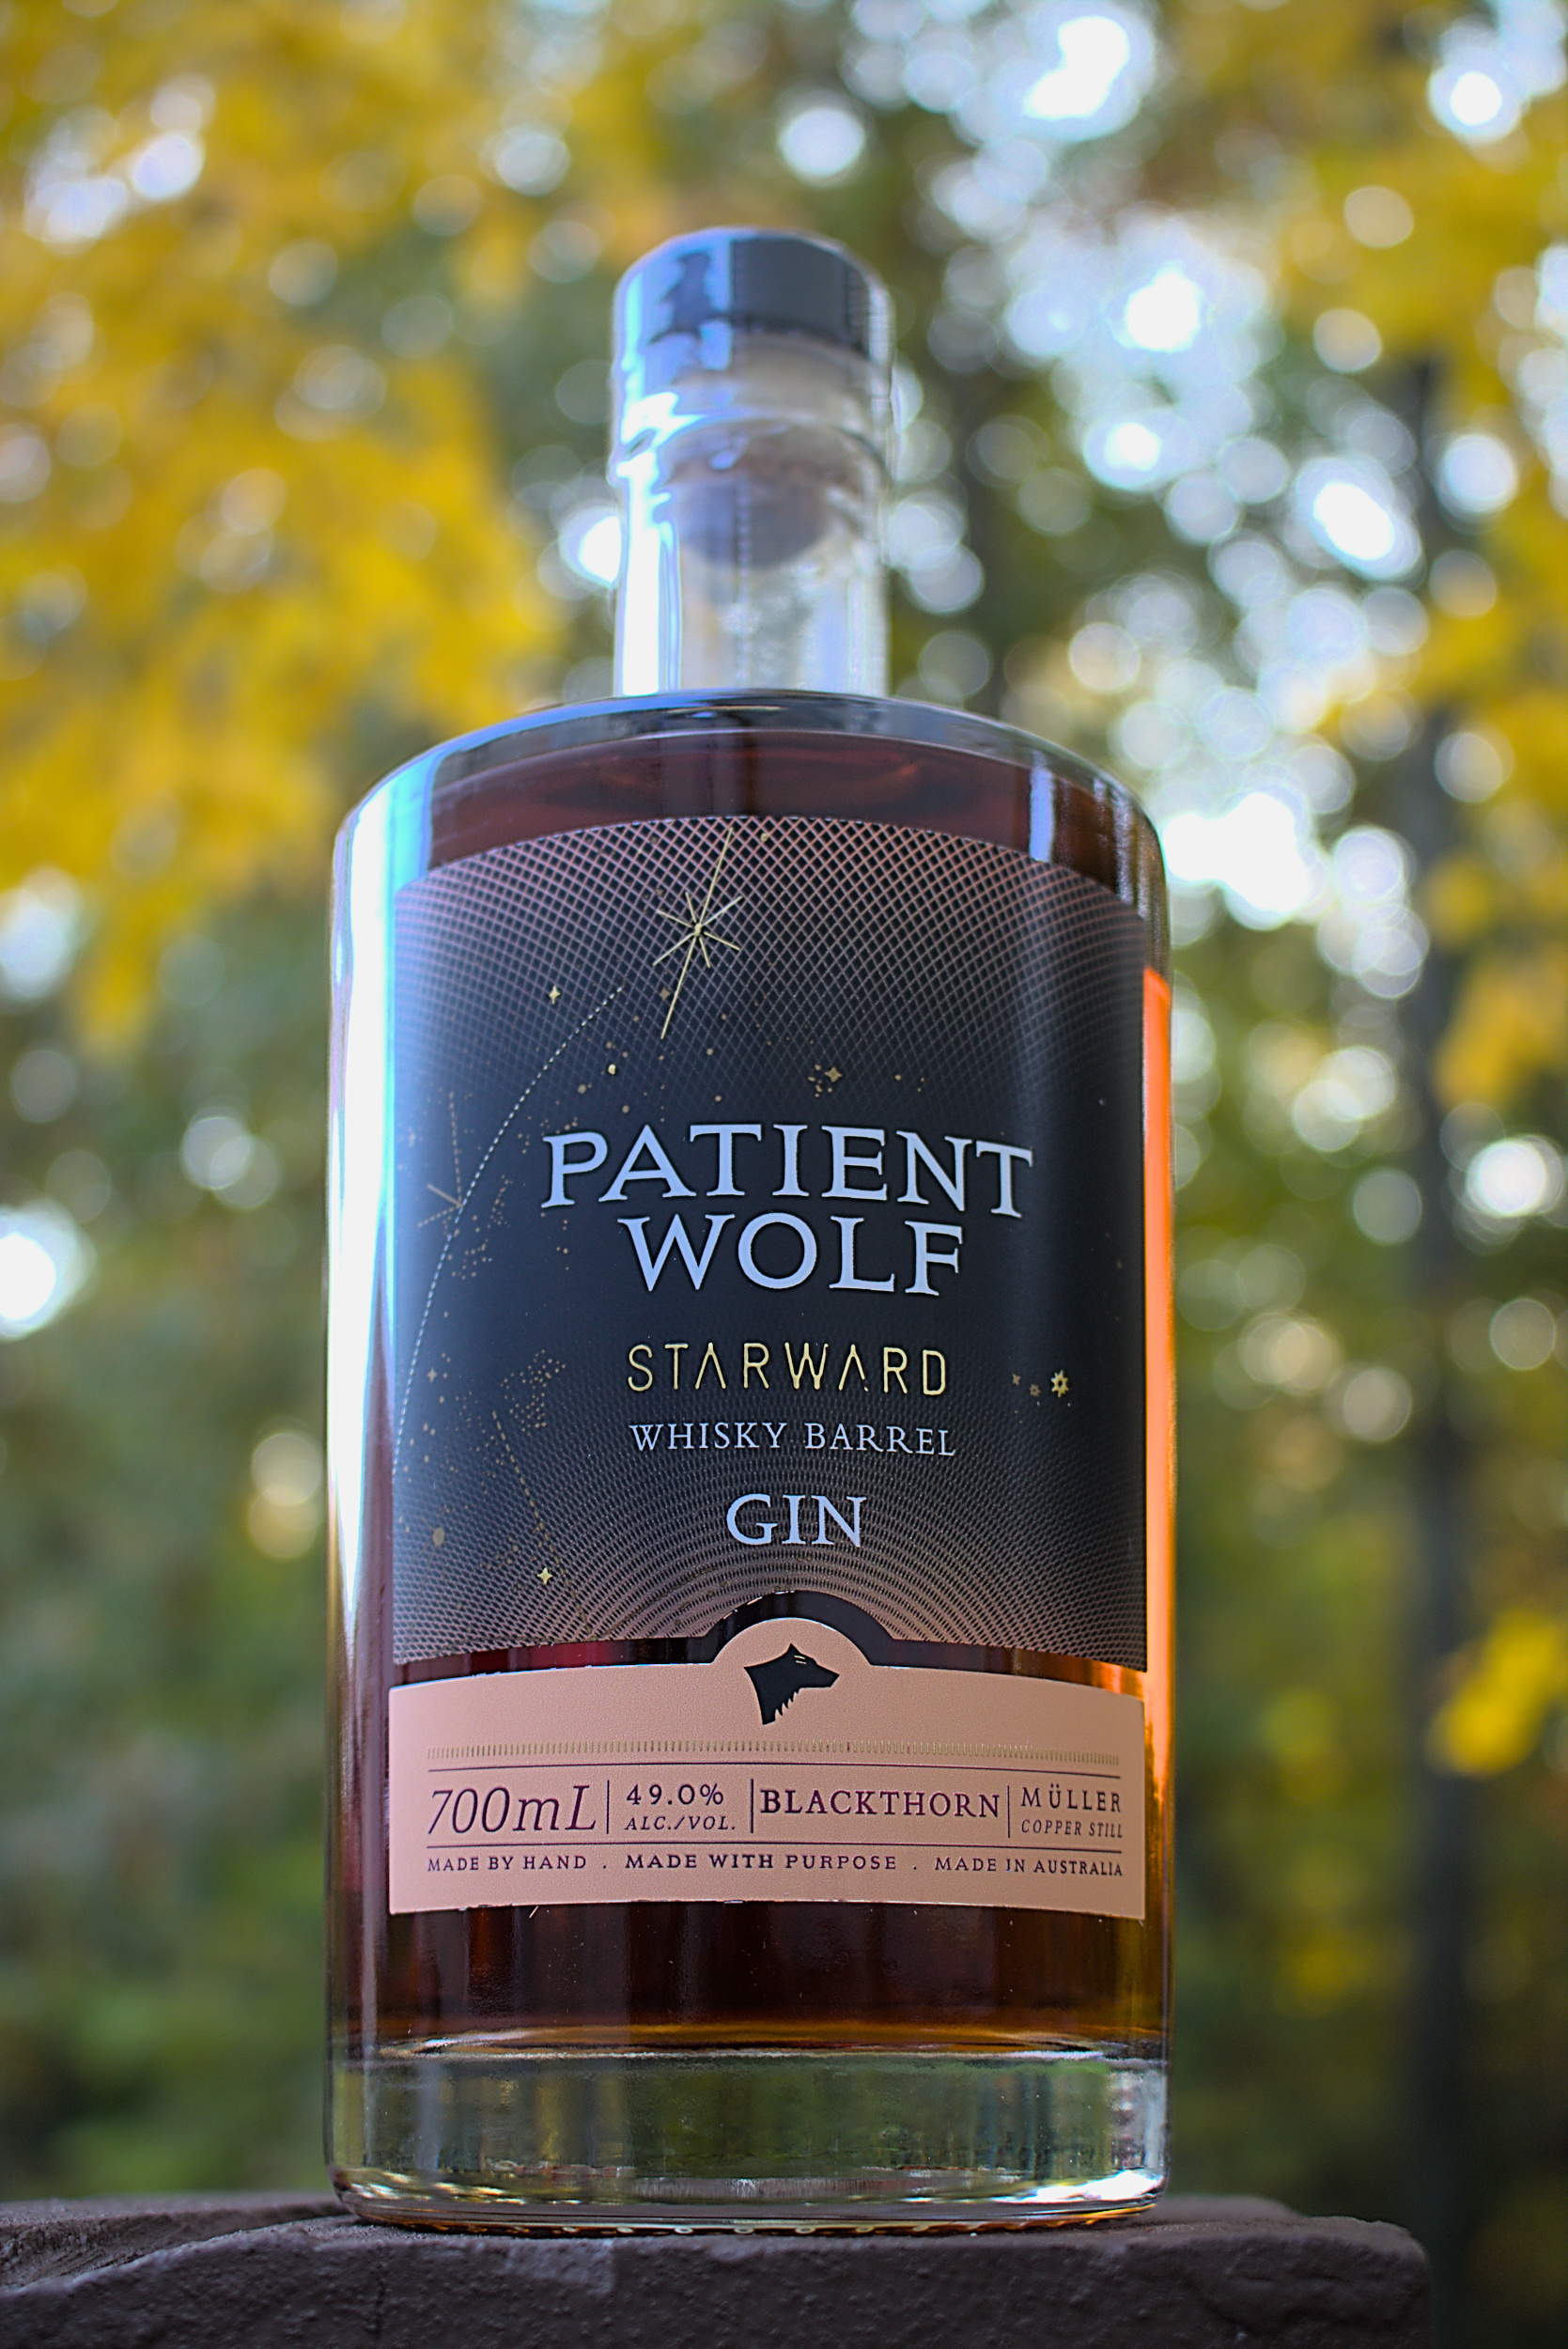 Patient Wolf Starward Whisky Barrel Gin